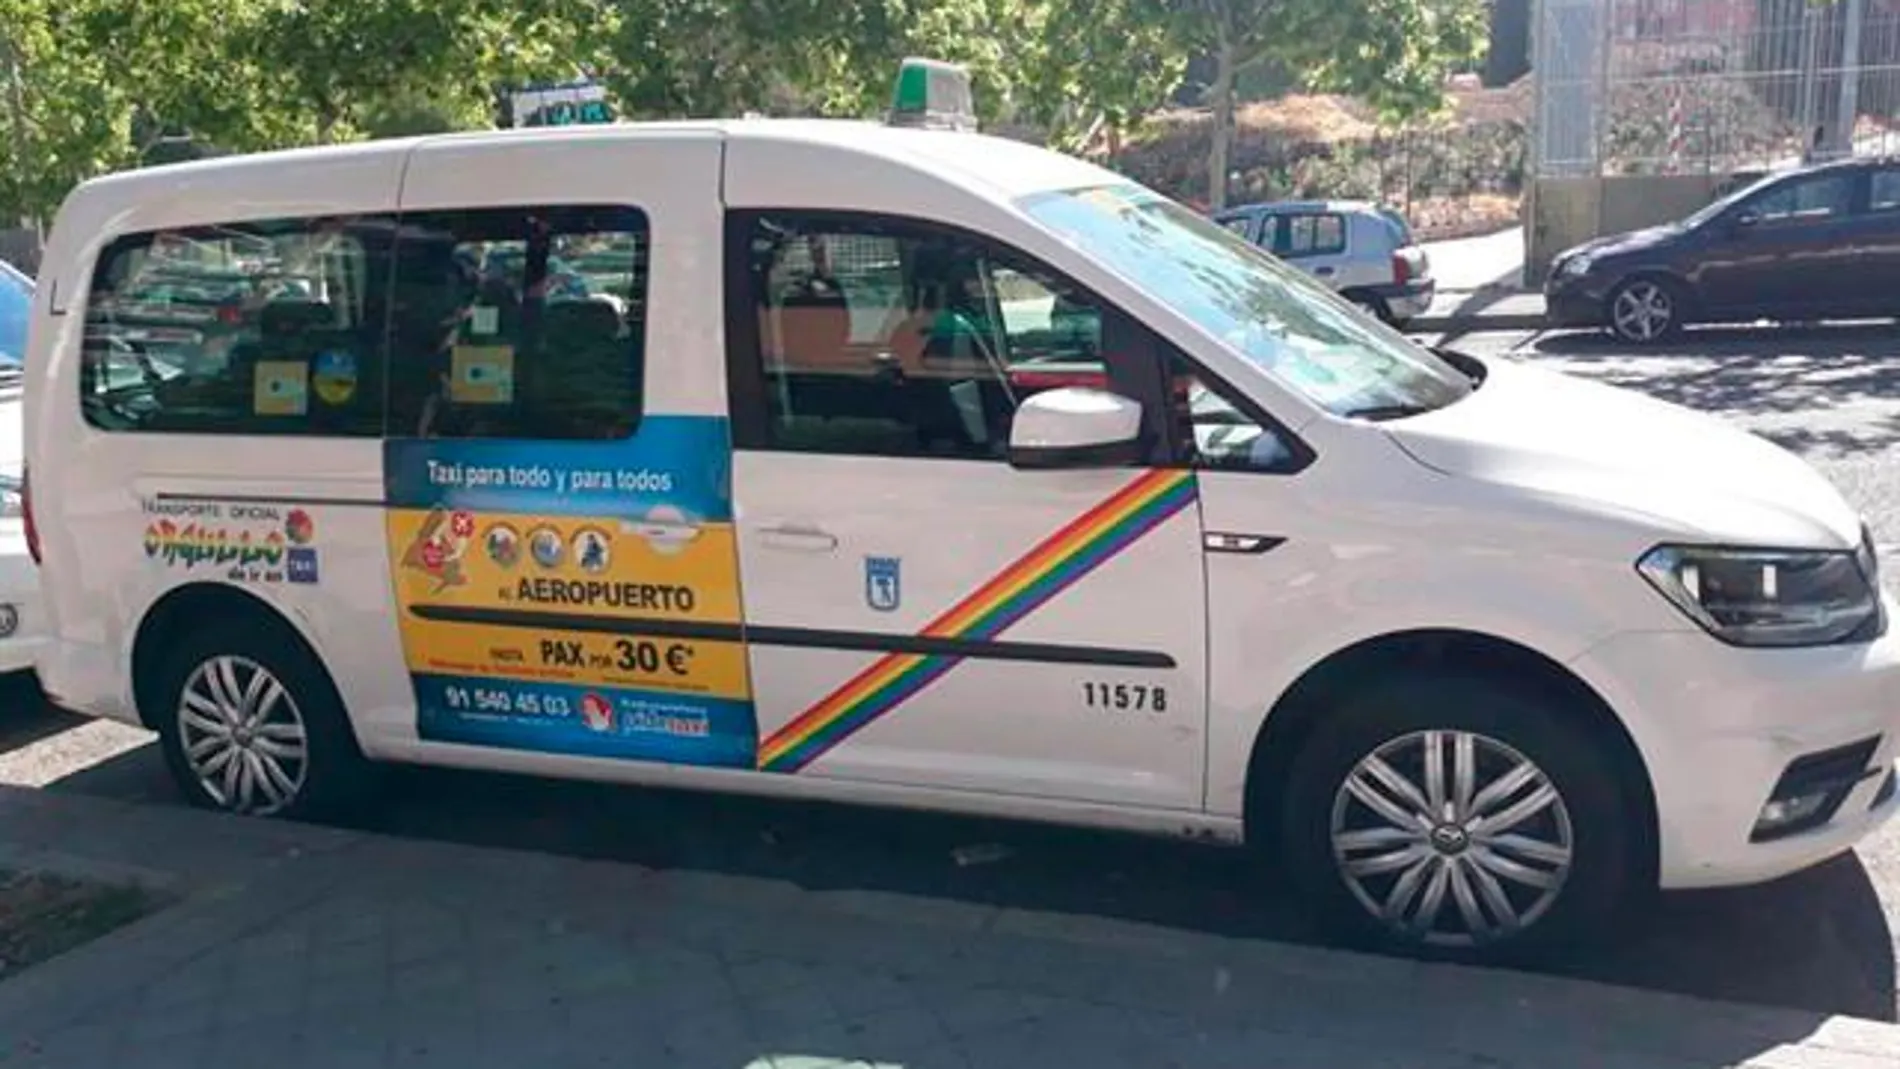 Taxi de Madrid con la banda arcoíris en lugar de la banda roja tradicional